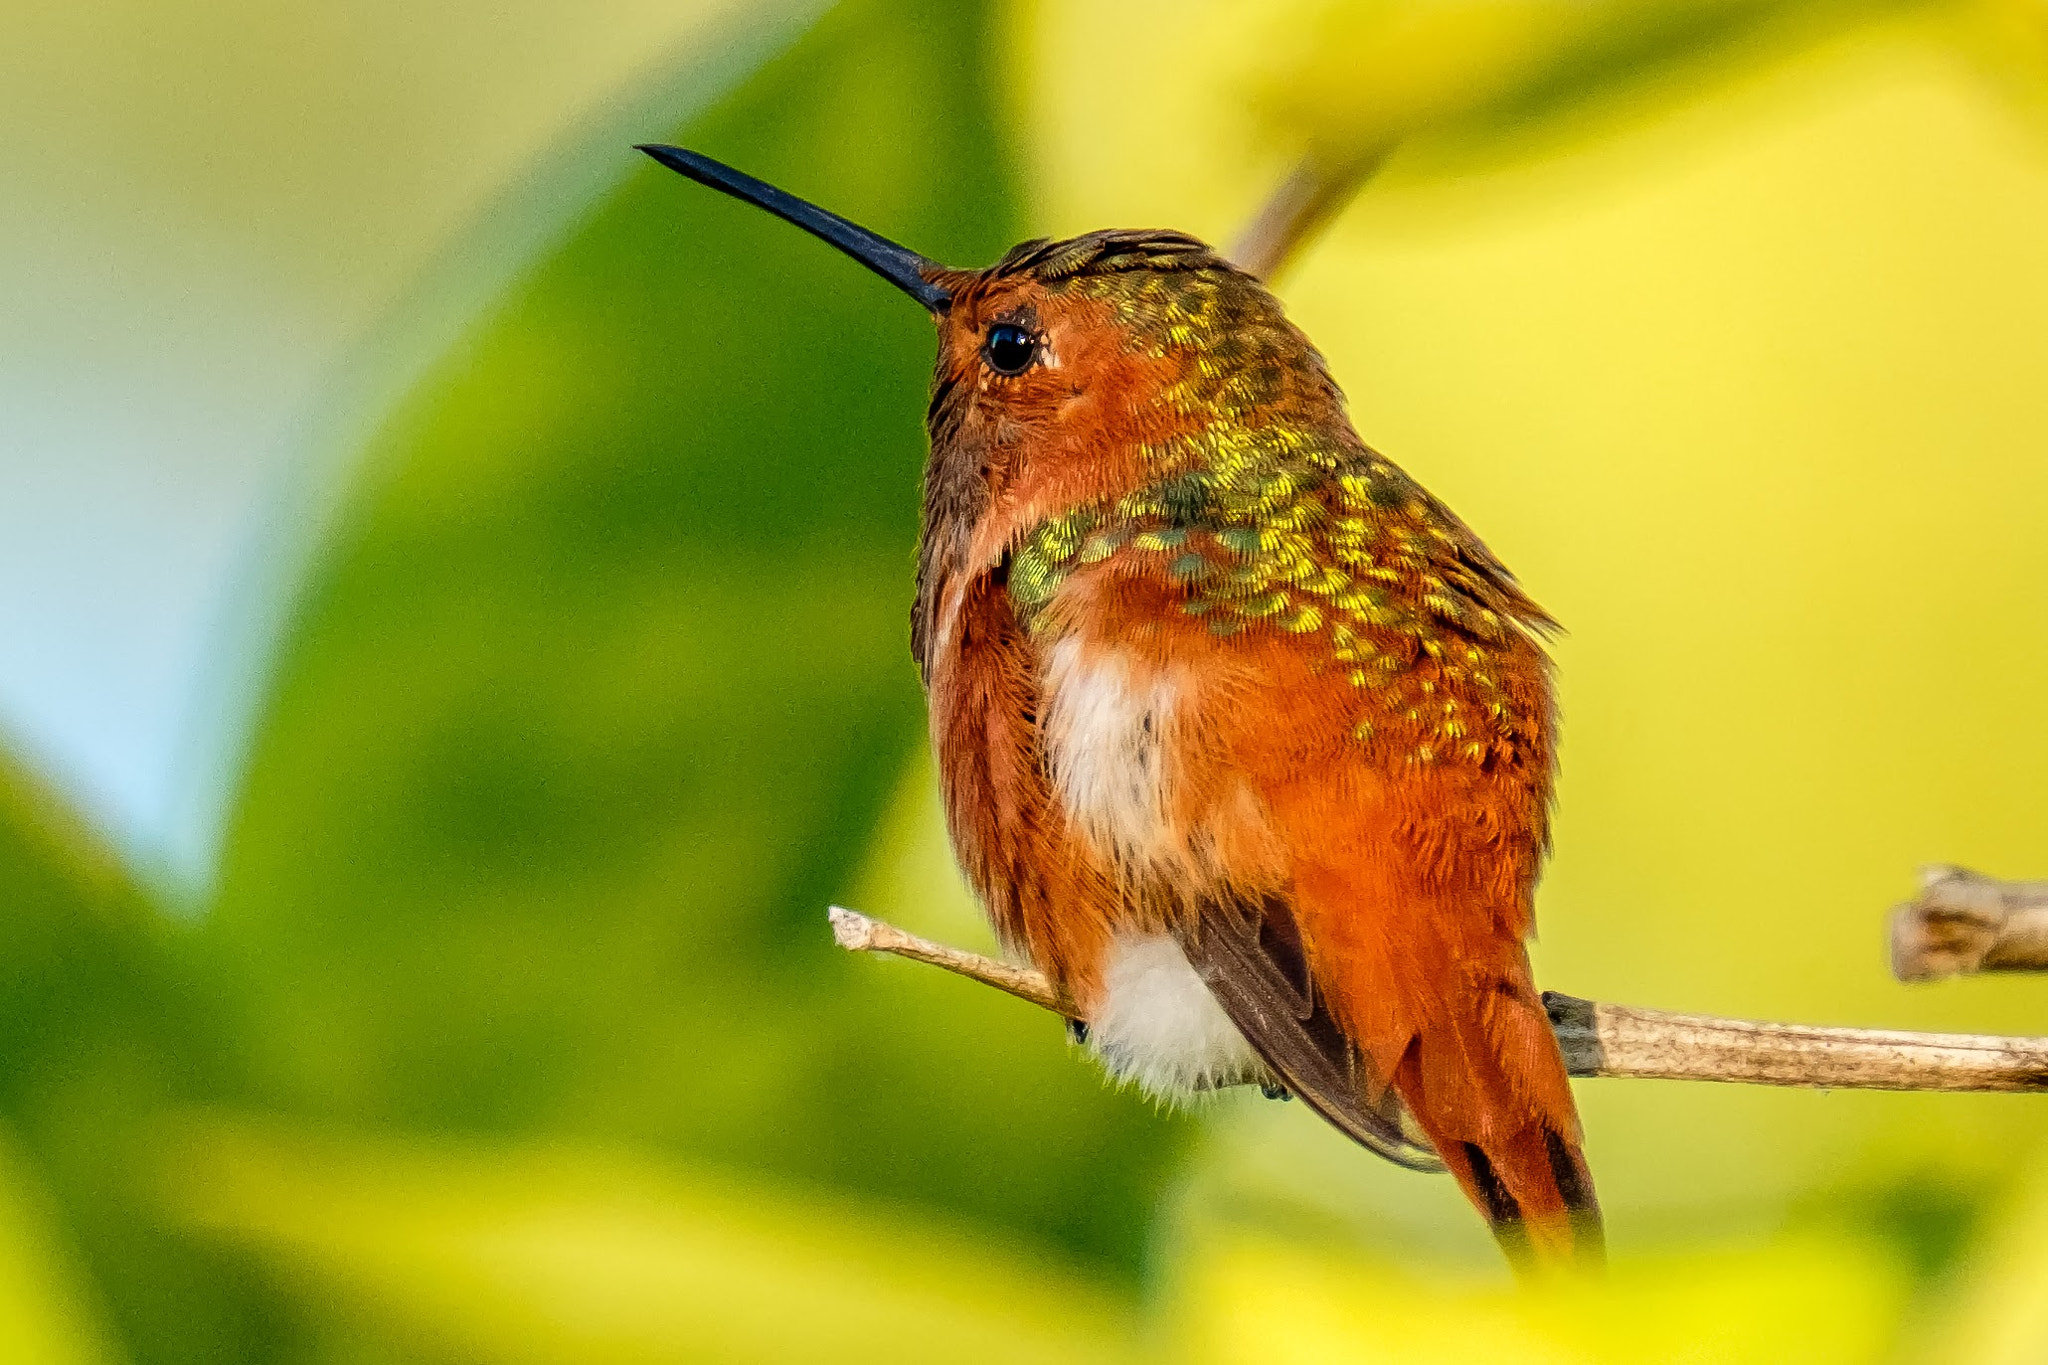 Fujifilm X-T2 sample photo. A beauty hummingbird photography